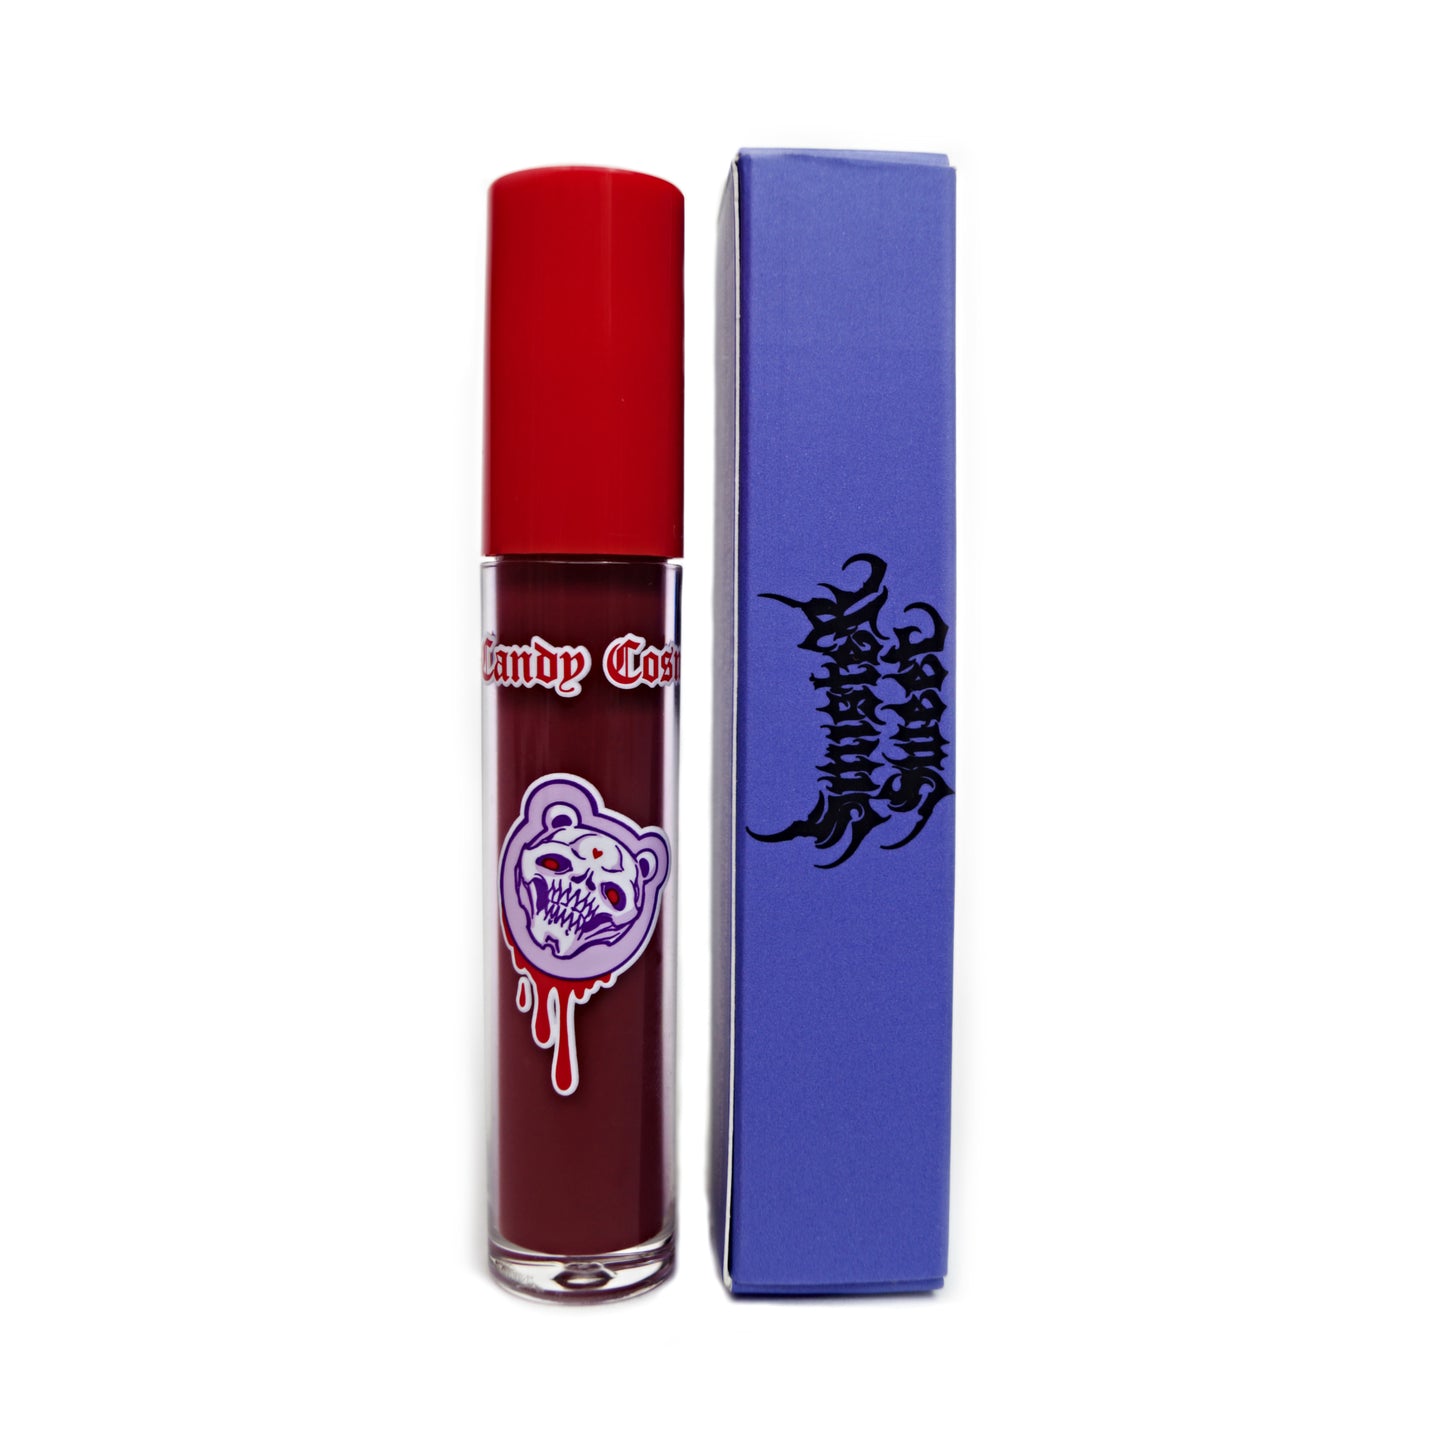 Vegan matte liquid lipstick - ROACHIE